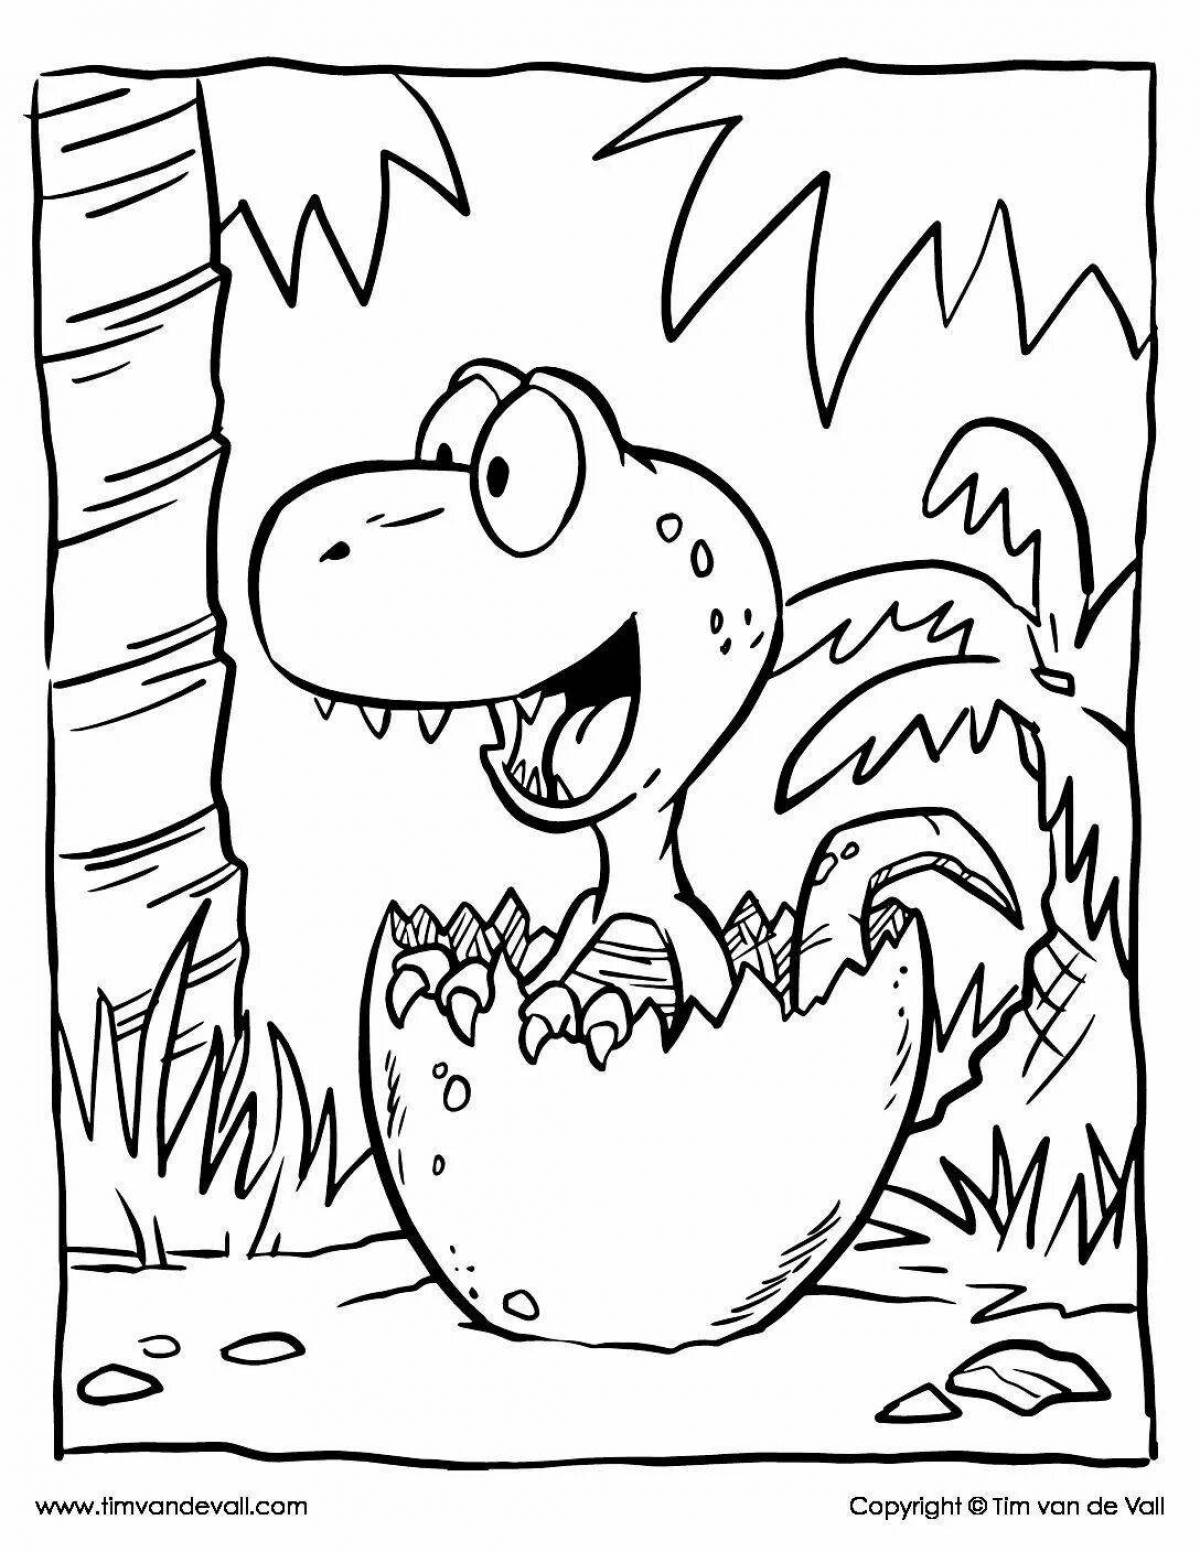 Adorable cartoon dinosaur coloring book